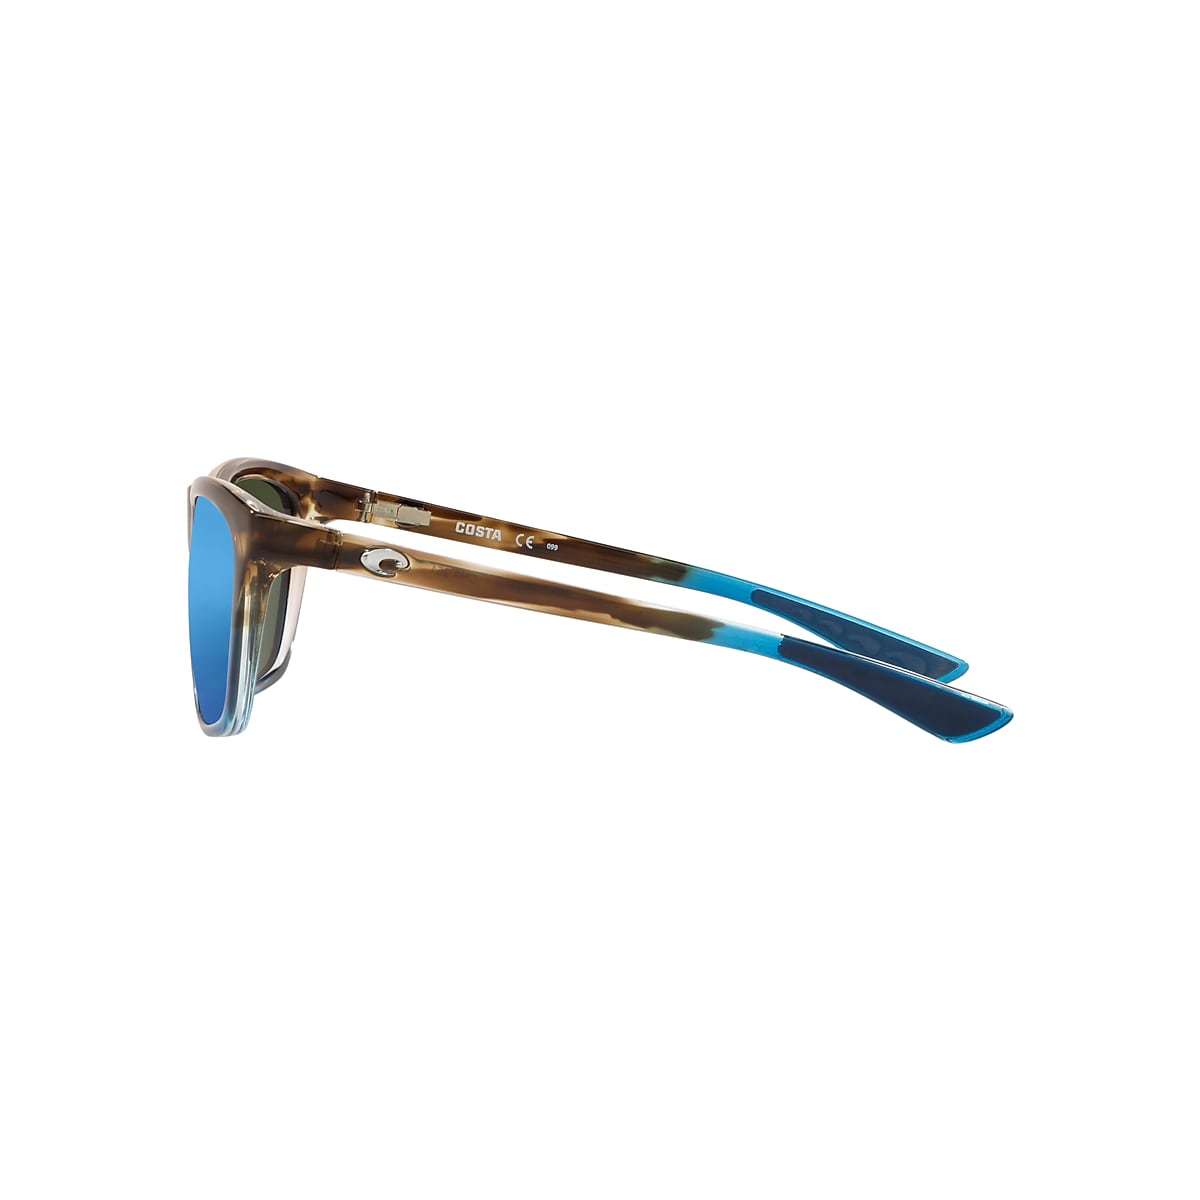 Cheeca Polarized Sunglasses in Blue Mirror